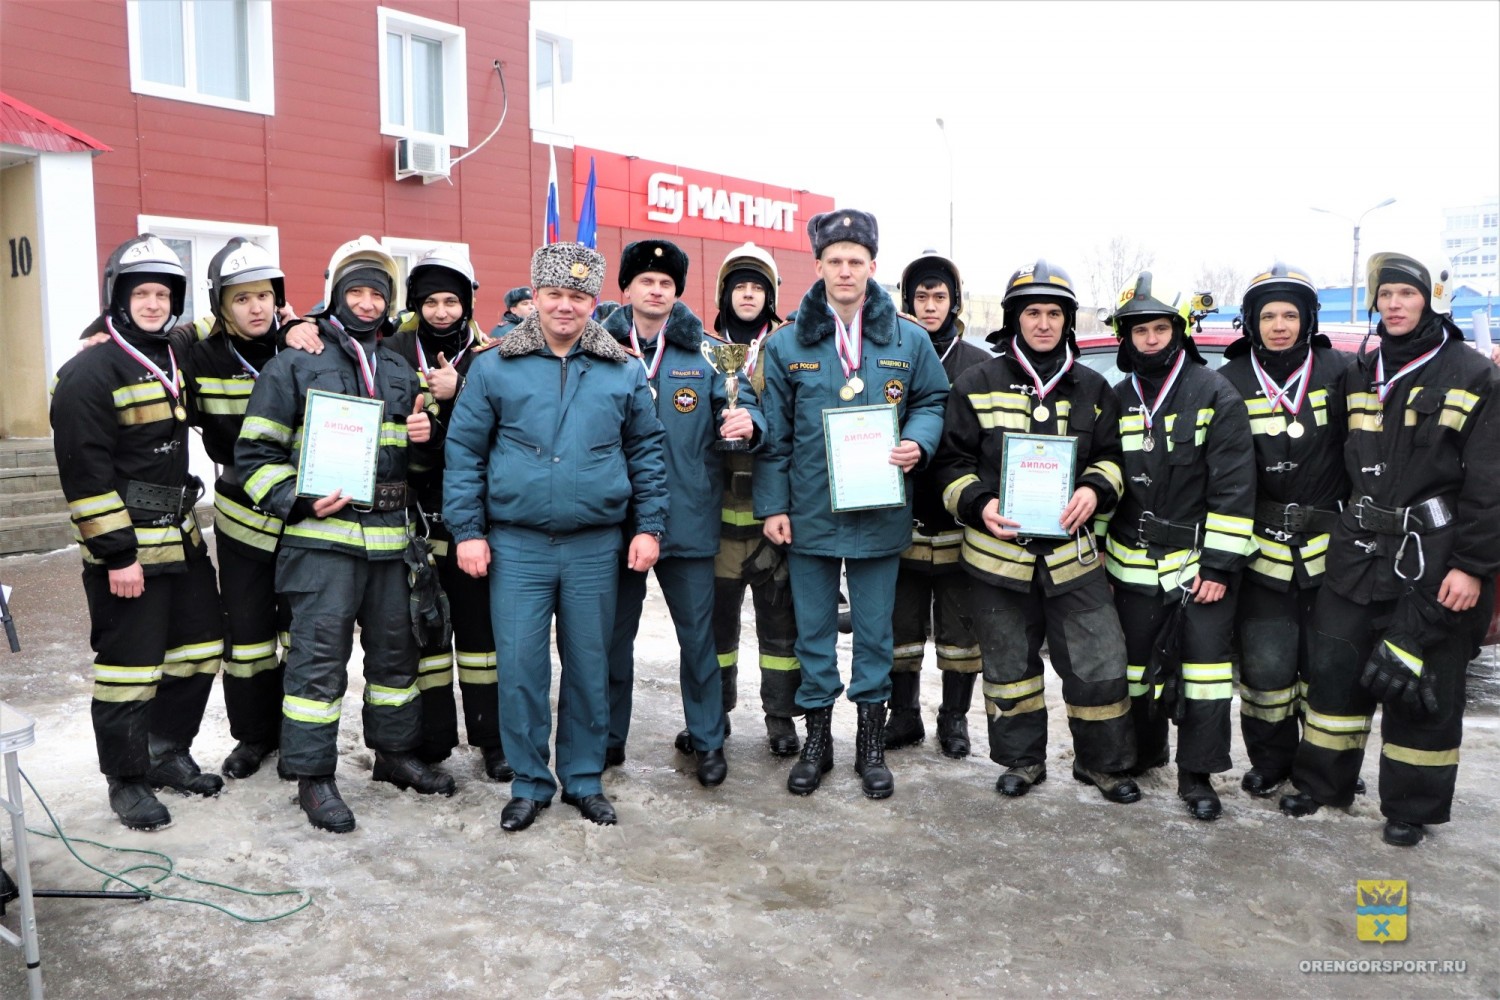 Чемпионат города Оренбурга среди пожарных и спасателей по вертикальному подъему